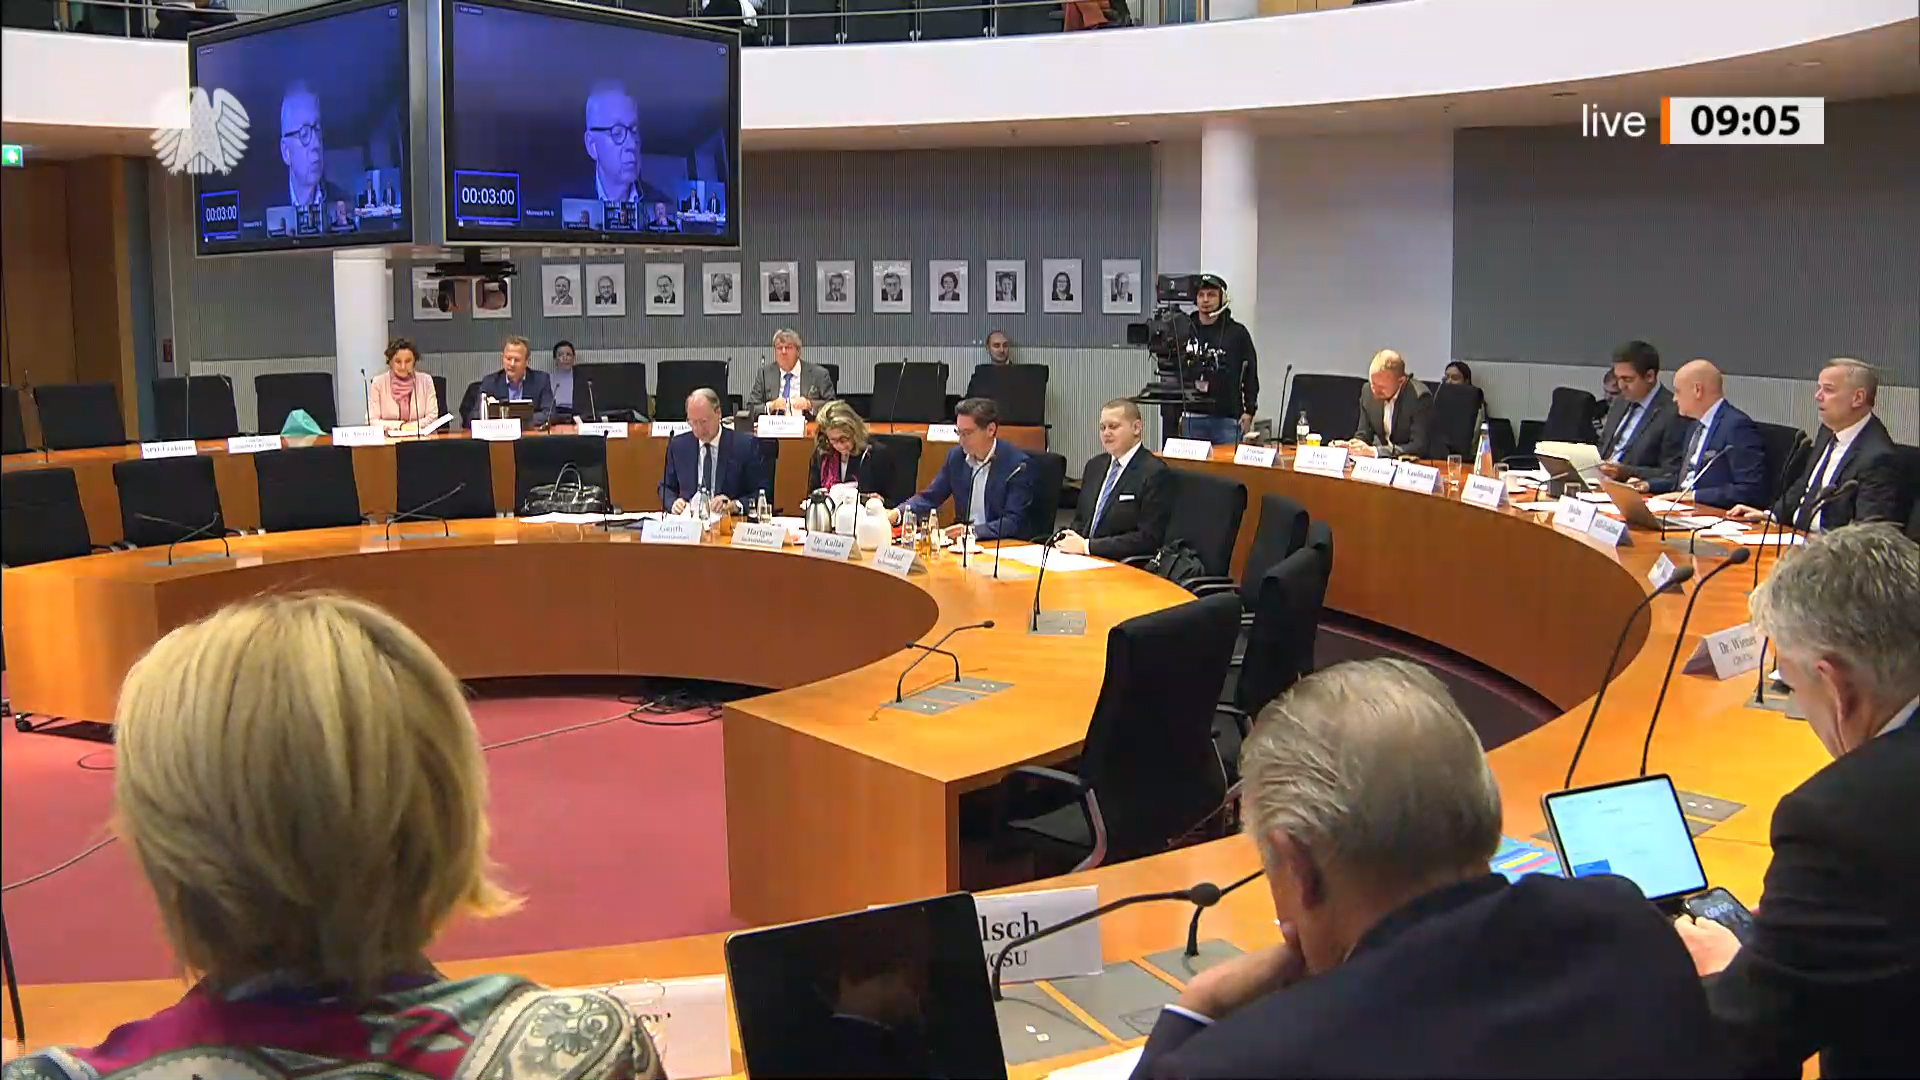 Bild: Screenshot der Videoaufzeichnung. Bildquelle: Deutscher Bundestag